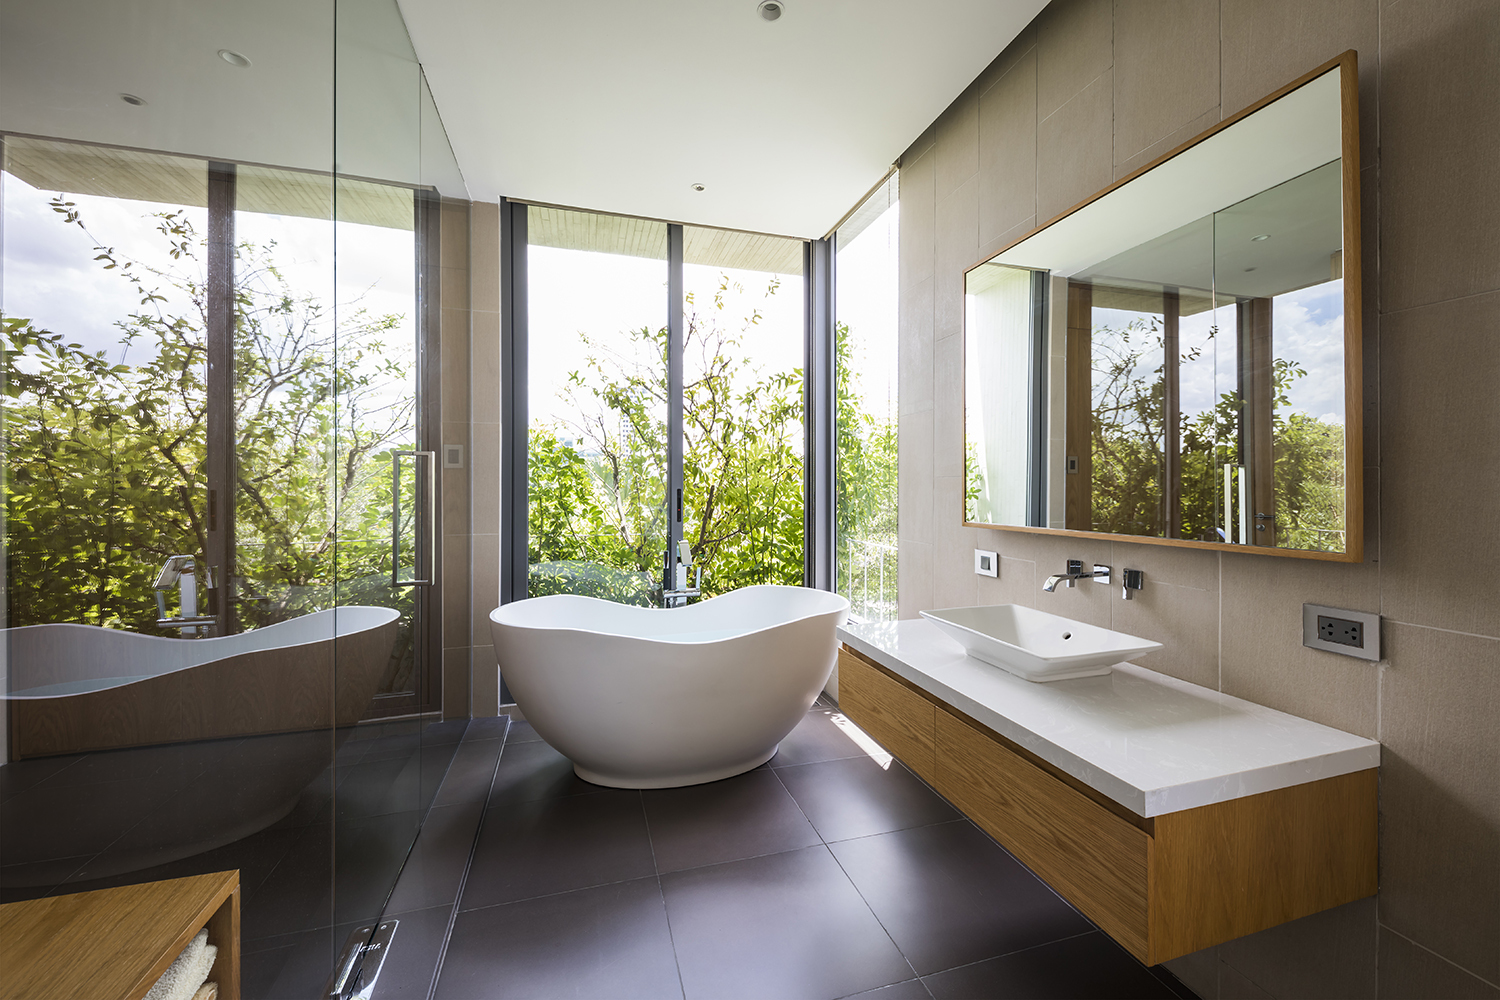 Phòng tắm, vệ sinh cũng được thiết kế theo phong cách mở, gần gũi với thiên nhiên.